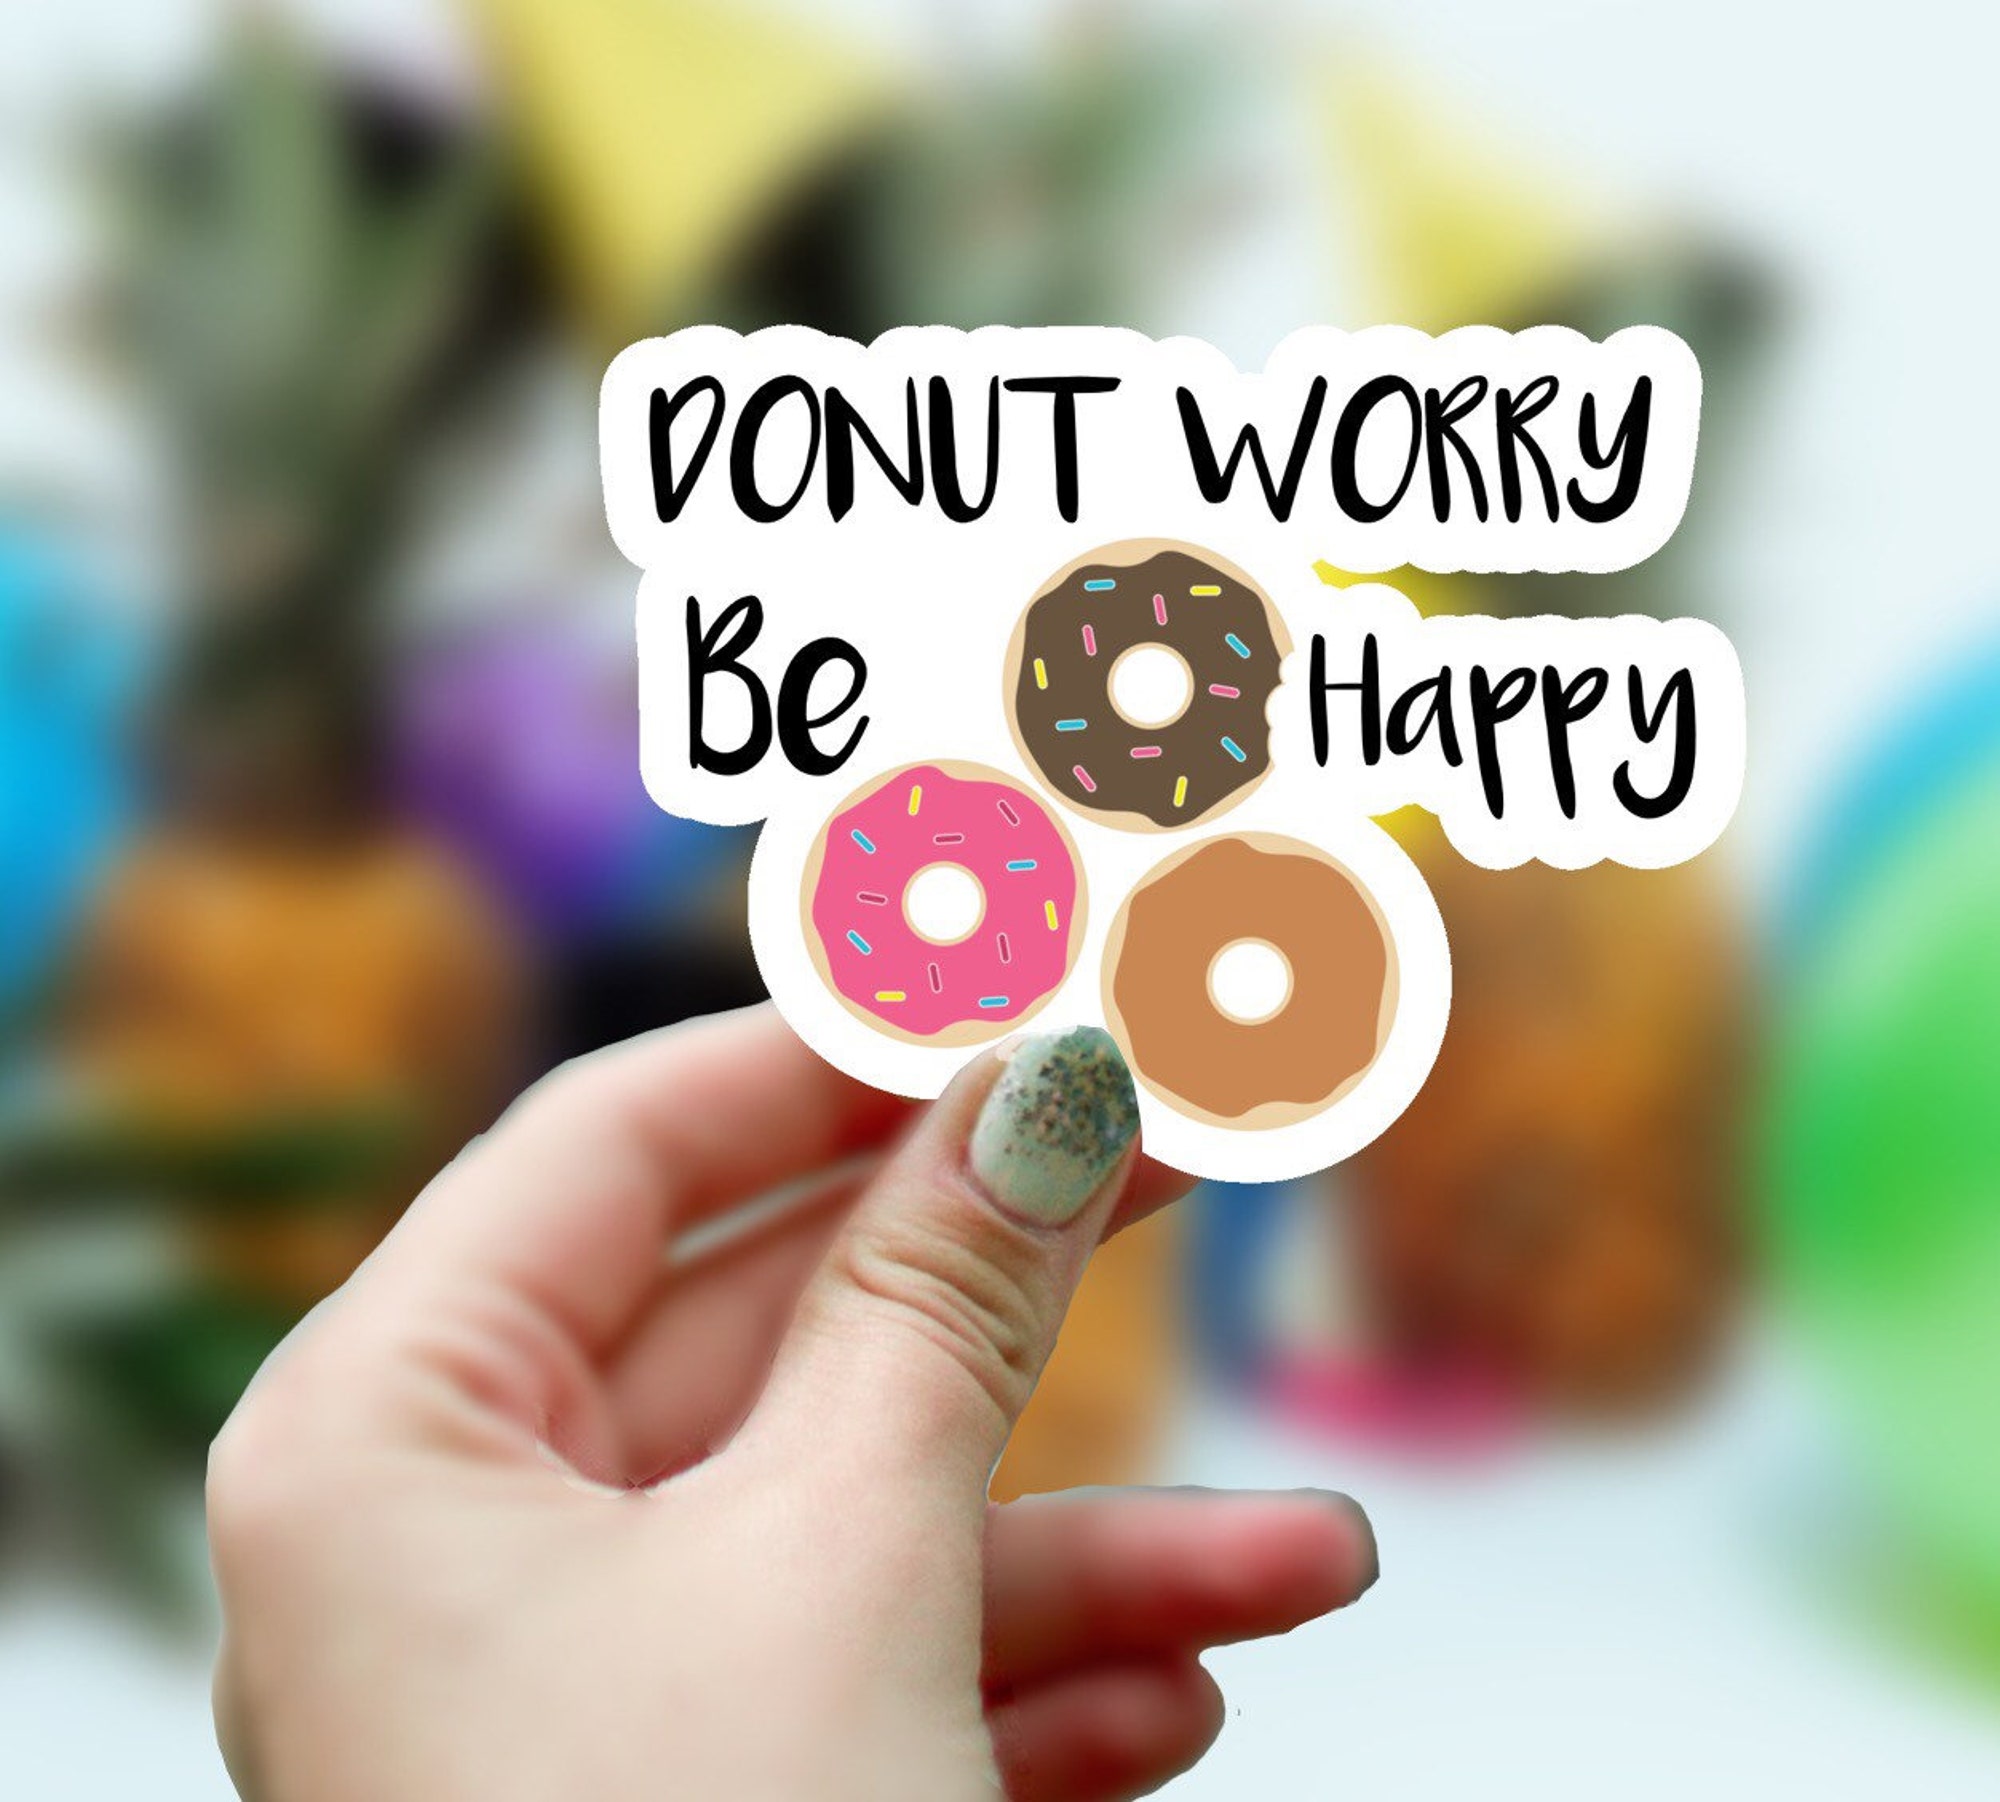 Donut Worry Be Happy Sticker, Waterproof Sticker